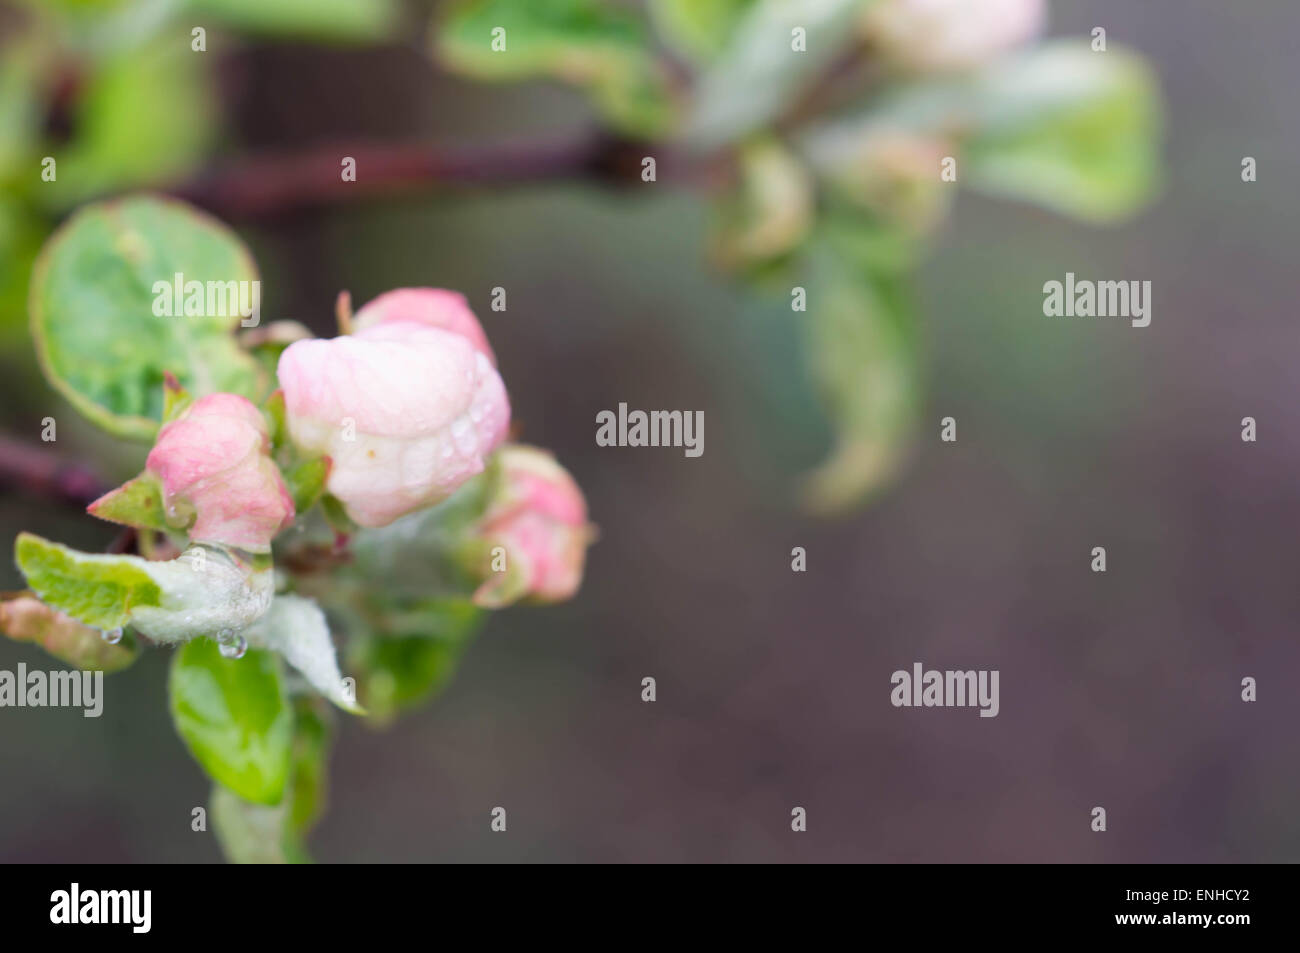 Gocce di acqua sui fiori di un Apple-tree Foto Stock